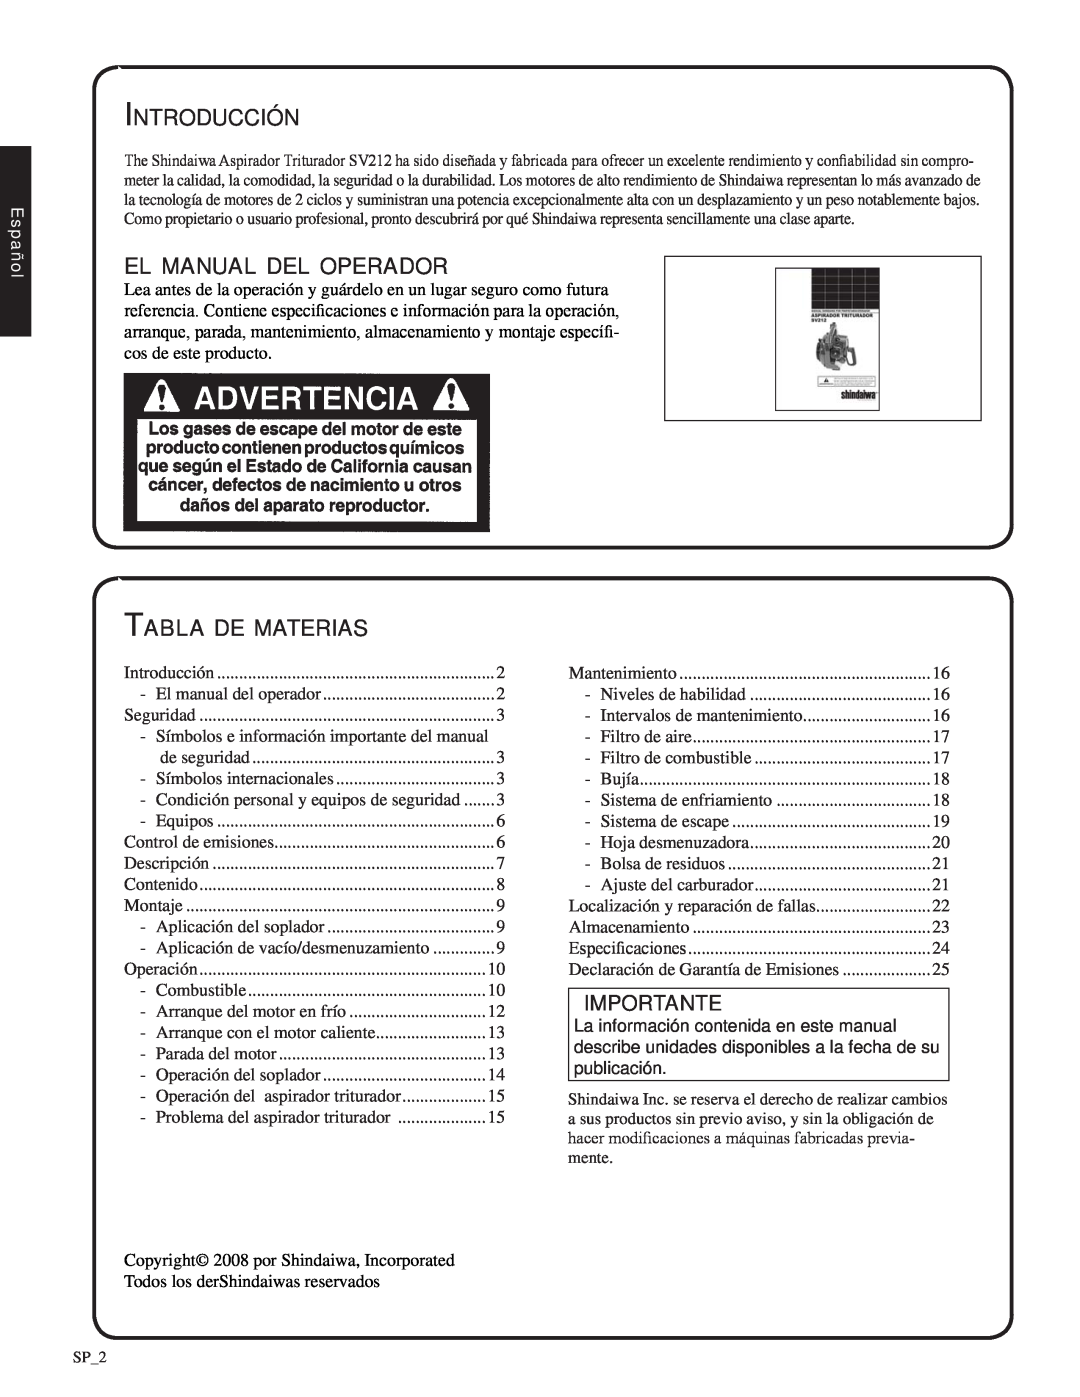 Shindaiwa SV212, 82052 Introducción, el manual del operador, Tabla de materias, Importante, Español 